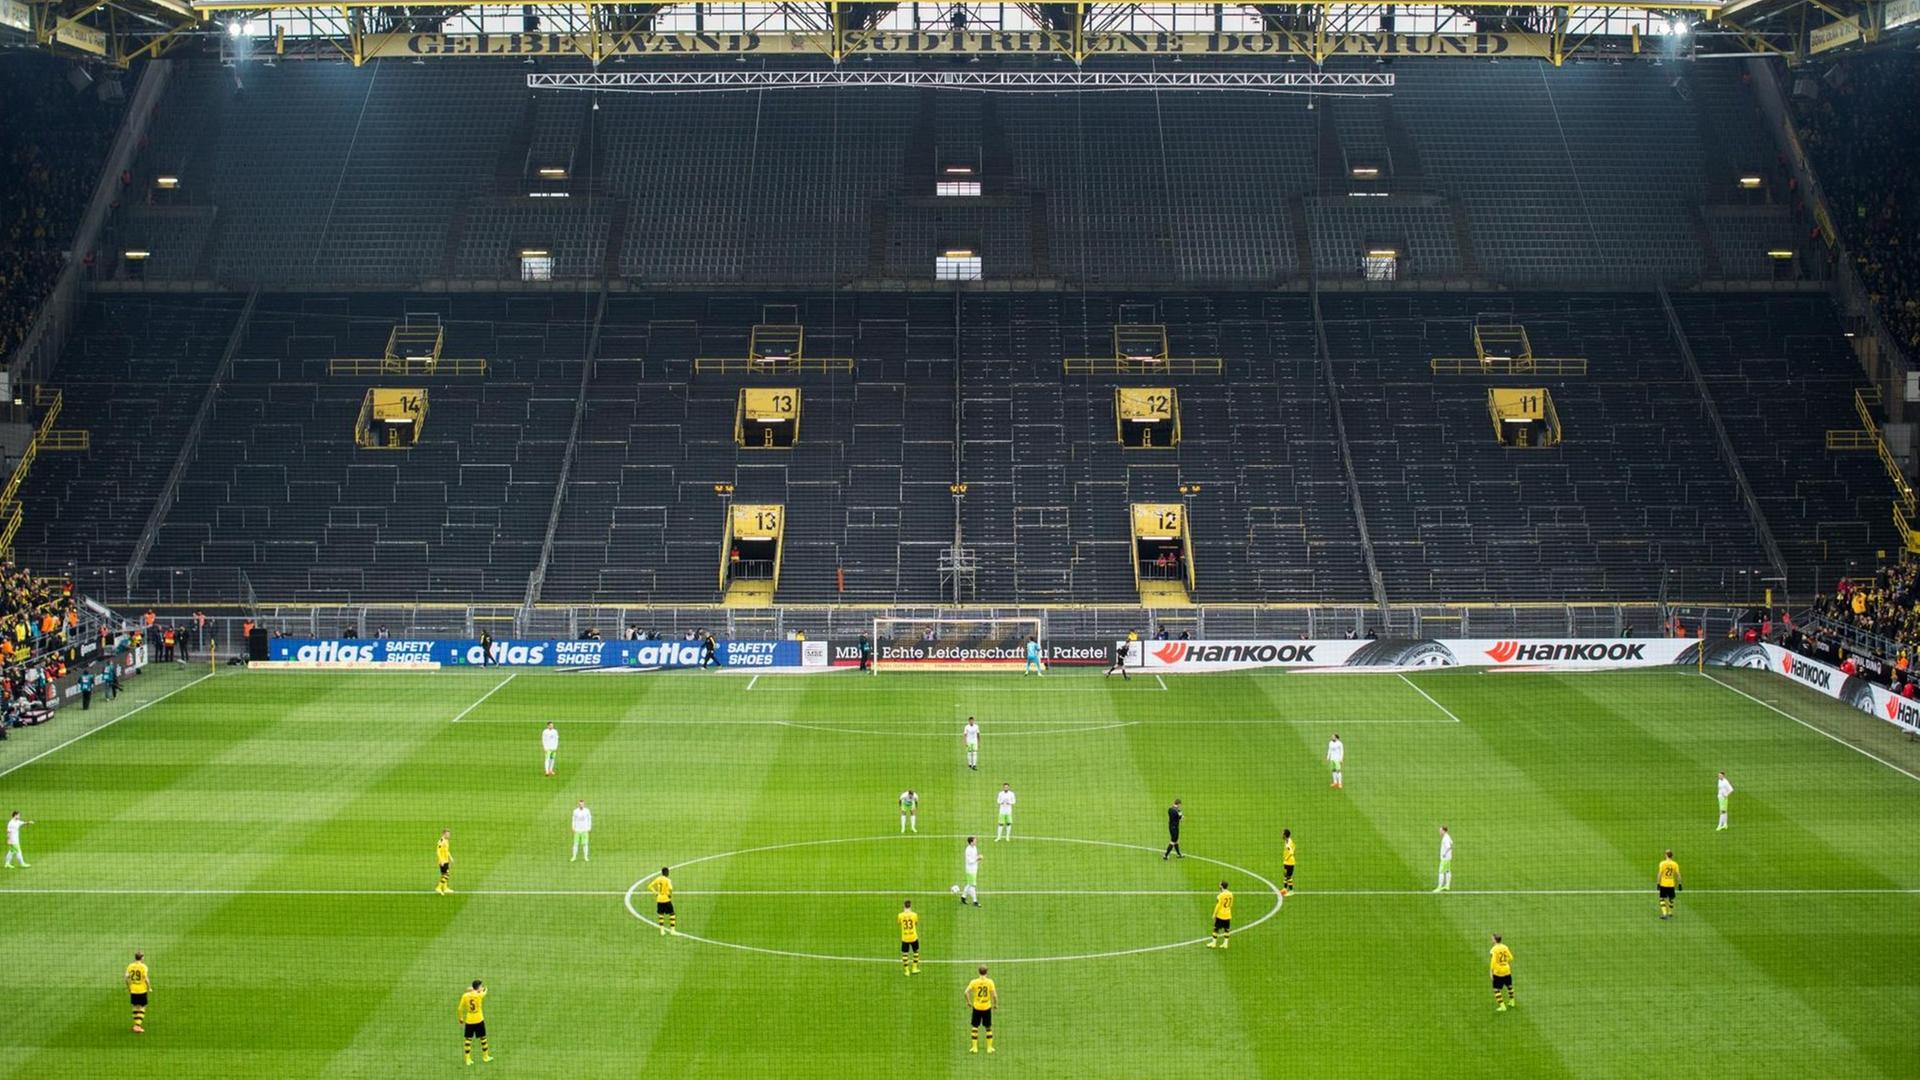 Stadionübersicht mit leerer Südtribüne.Nach den Vorfällen beim Heimspiel gegen RB Leipzig muss Borussia Dortmund seine Bundesliga-Partie gegen Wolfsburg vor einer leeren Südtribüne bestreiten.